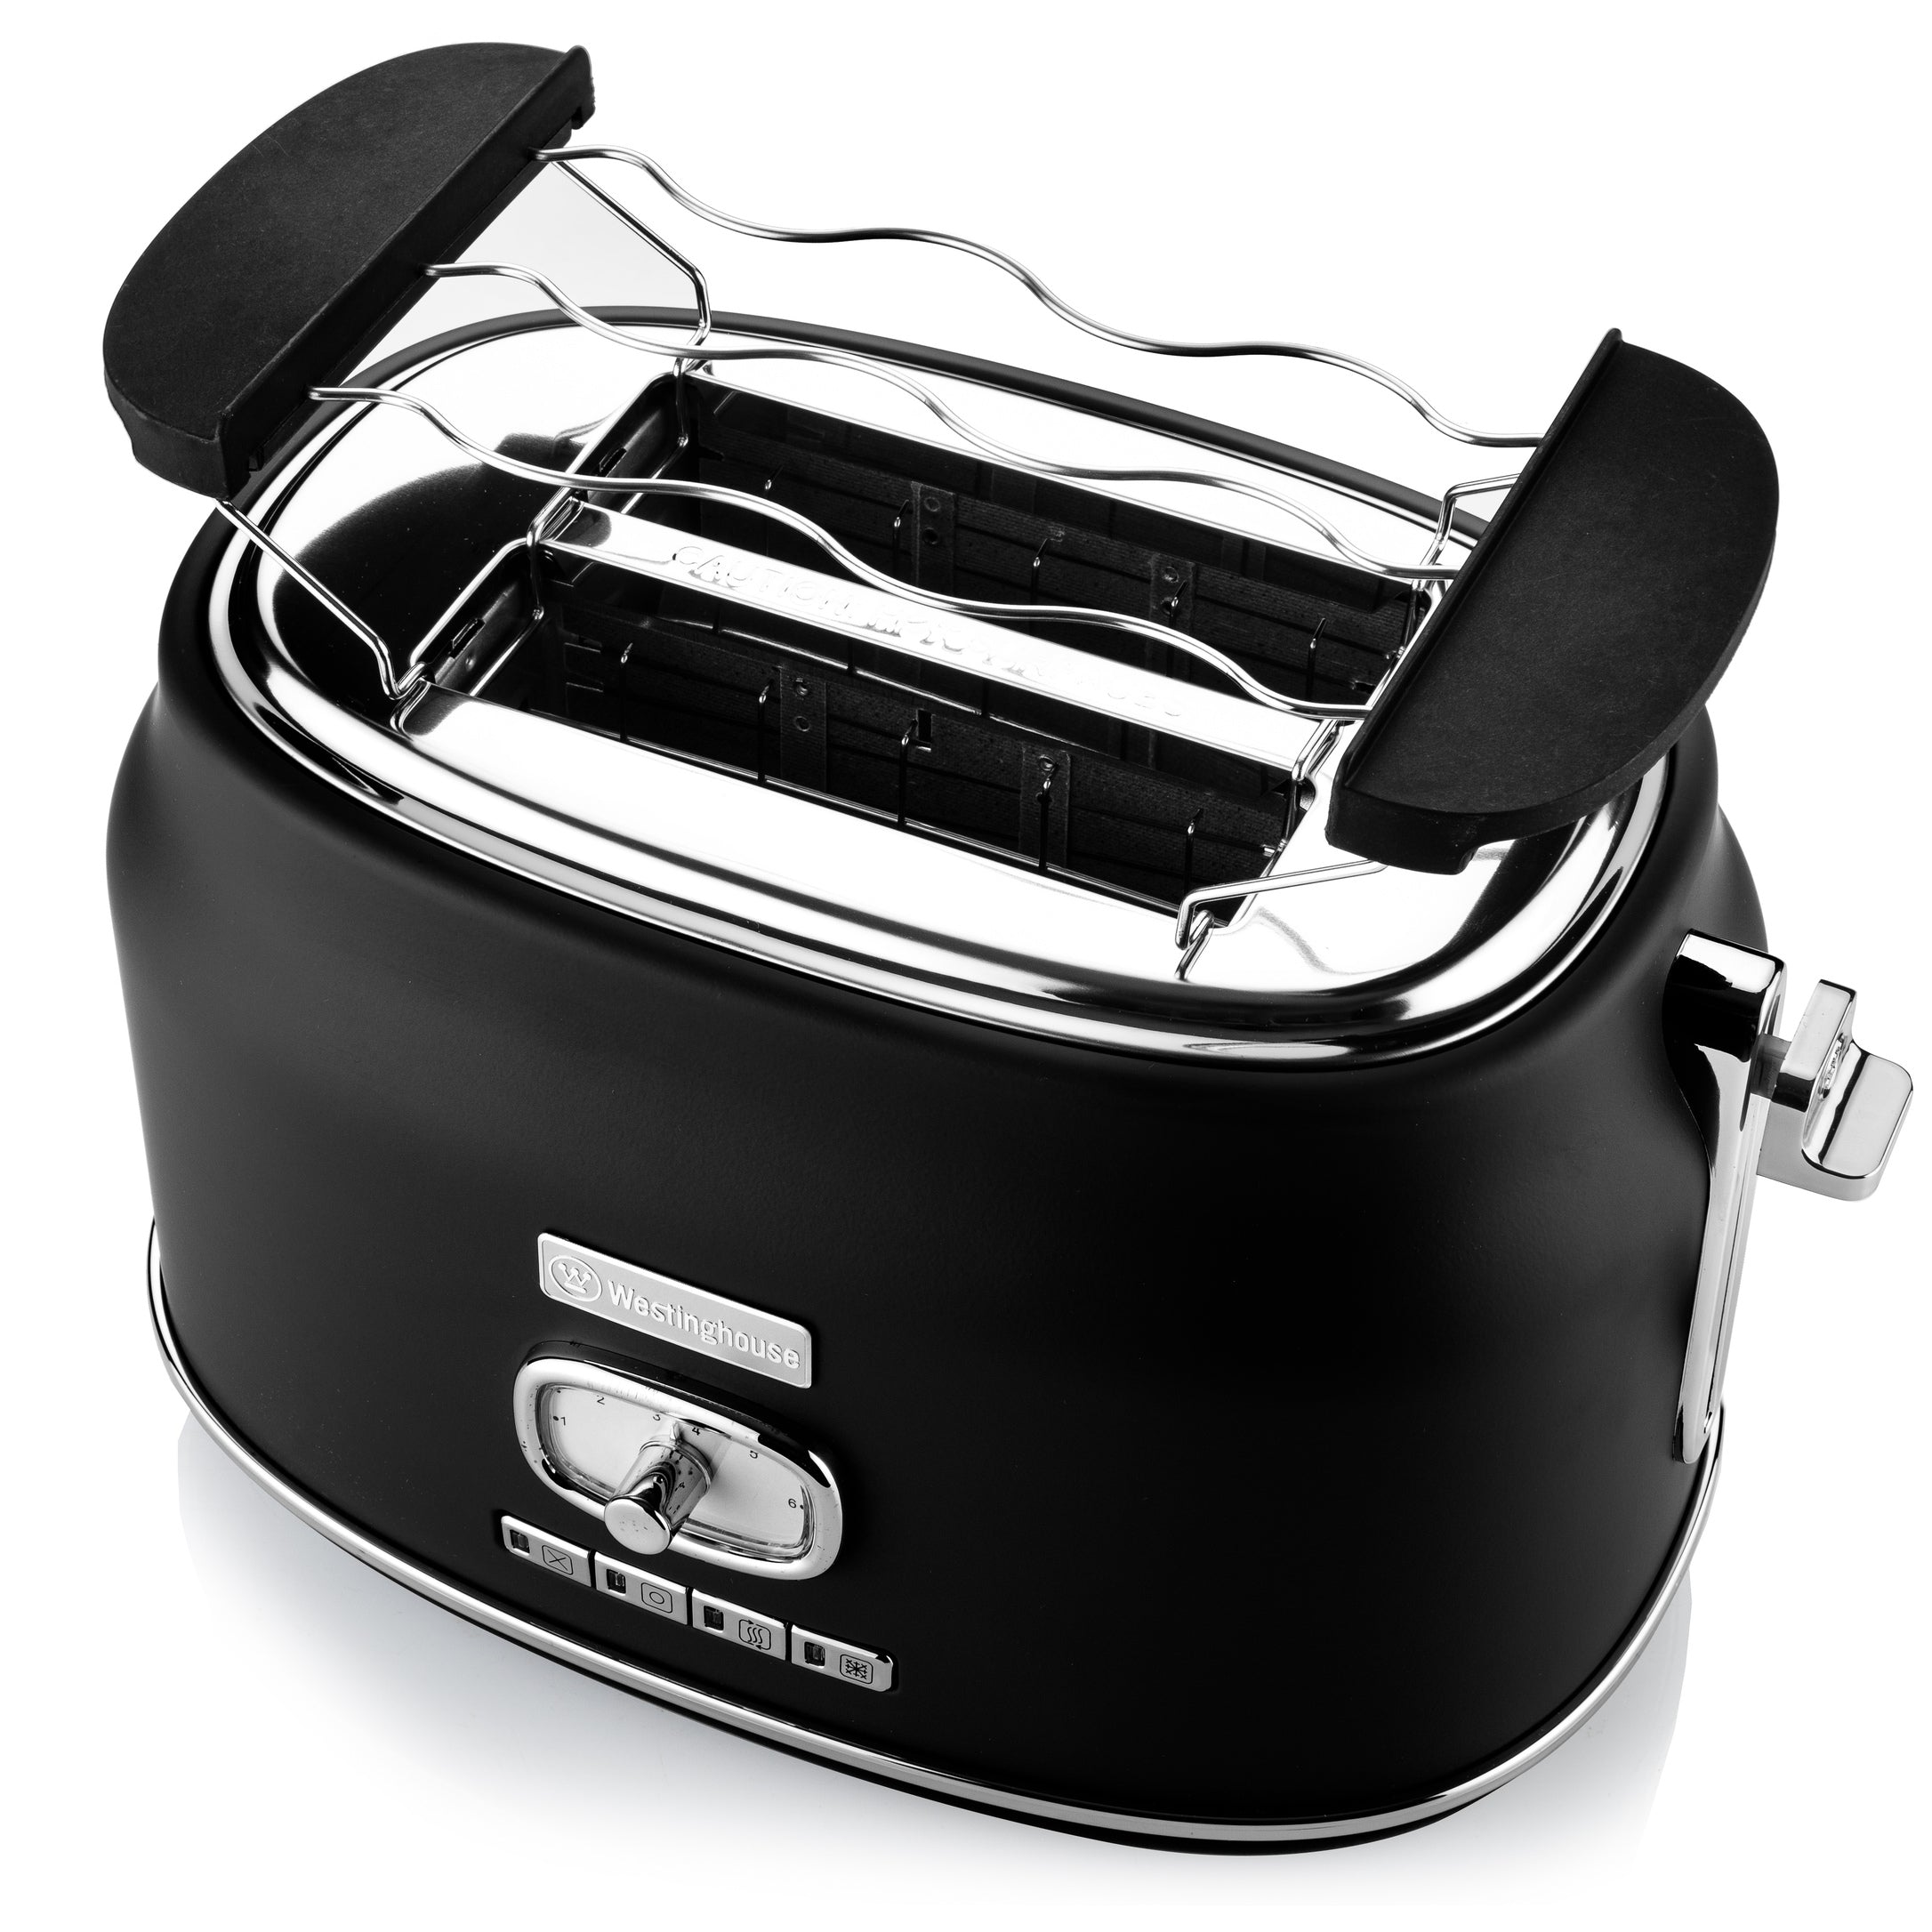 Toaster Grille pain 2 fentes XL Class800 - Inox Riviera Bar QD812A Achat /  Vente Appareil Electroménager et Accessoire sur